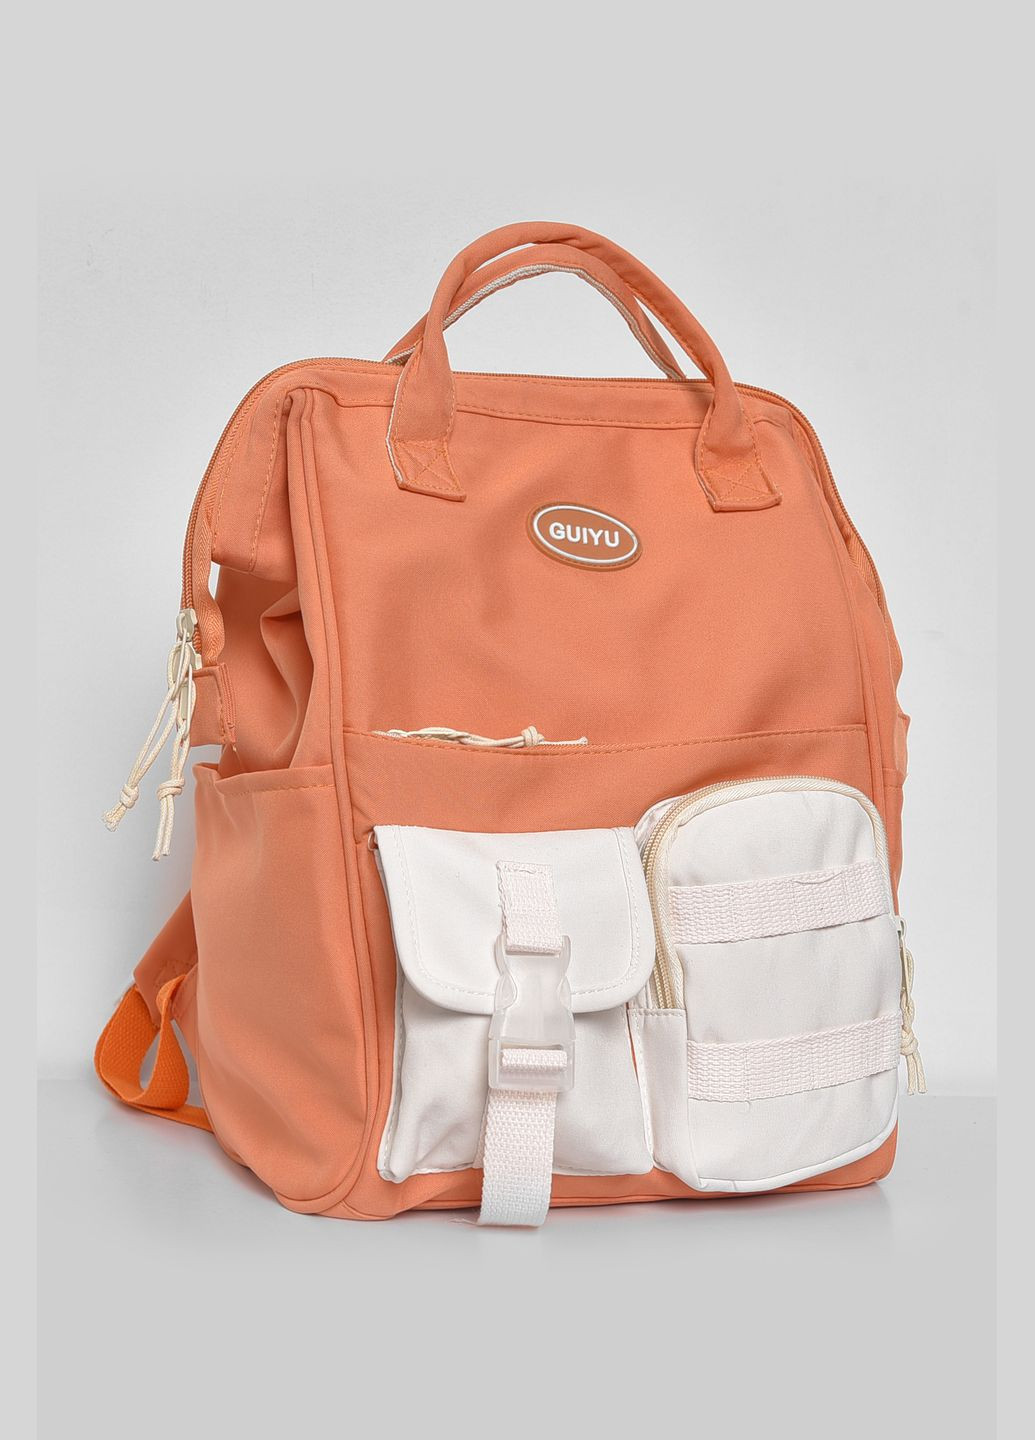 Рюкзак женский текстильный оранжевого цвета Let's Shop (280938077)